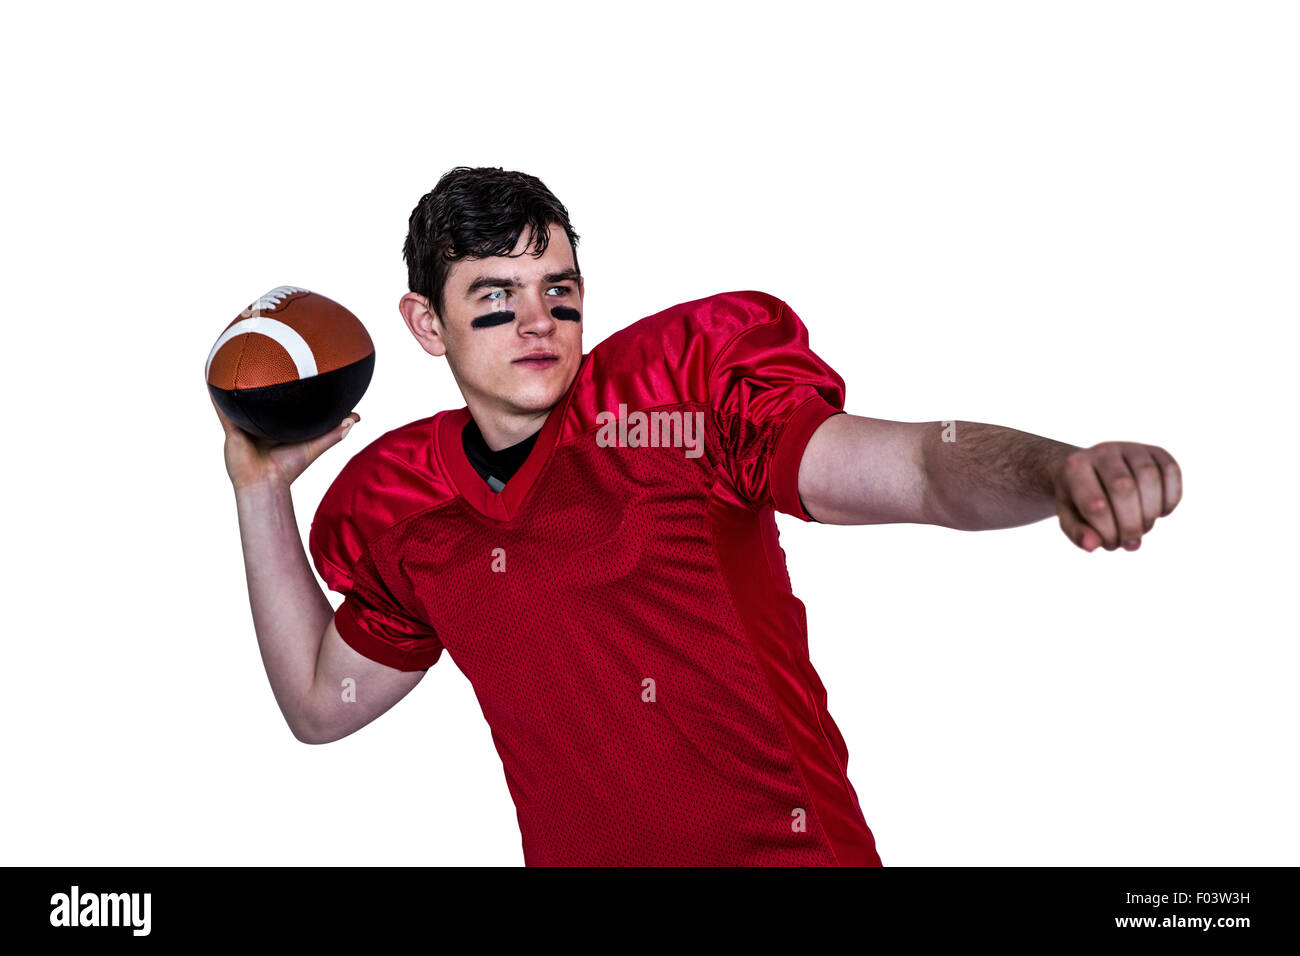 Joueur de football américain lançant une boule Banque D'Images